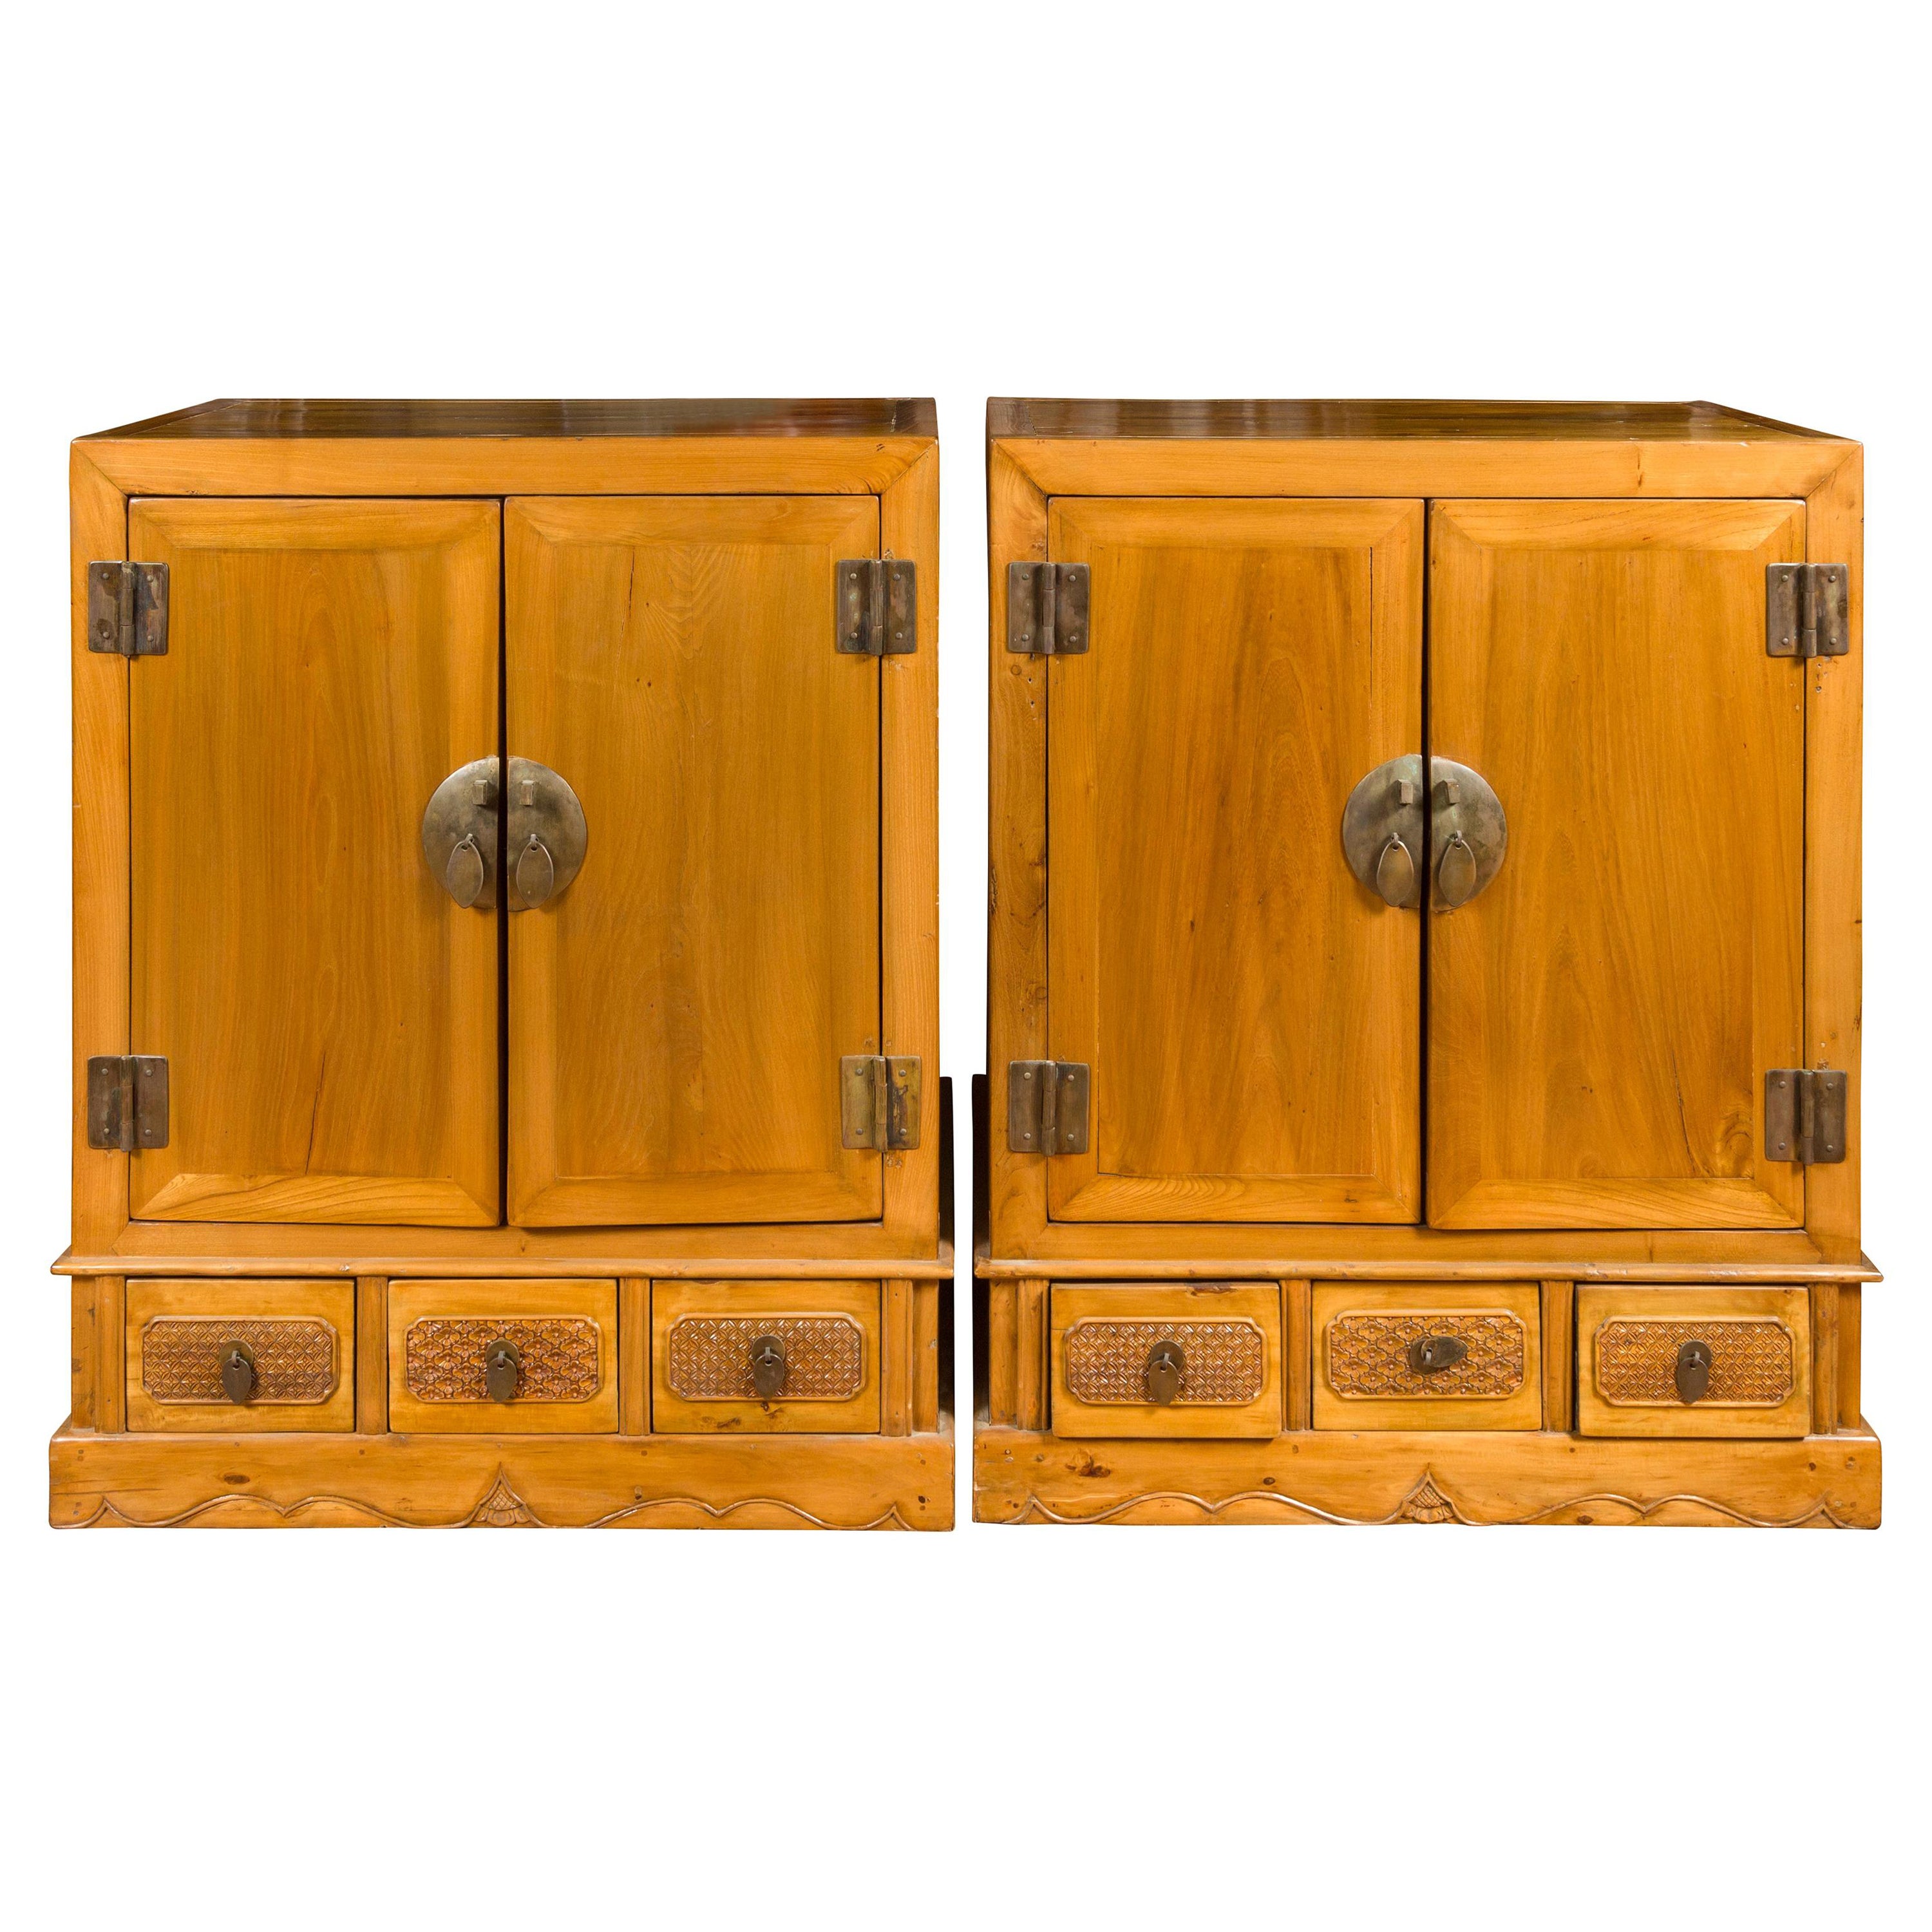 Paire d'armoires en bois Yumu sculpté à portes et tiroirs de la dynastie chinoise Qing